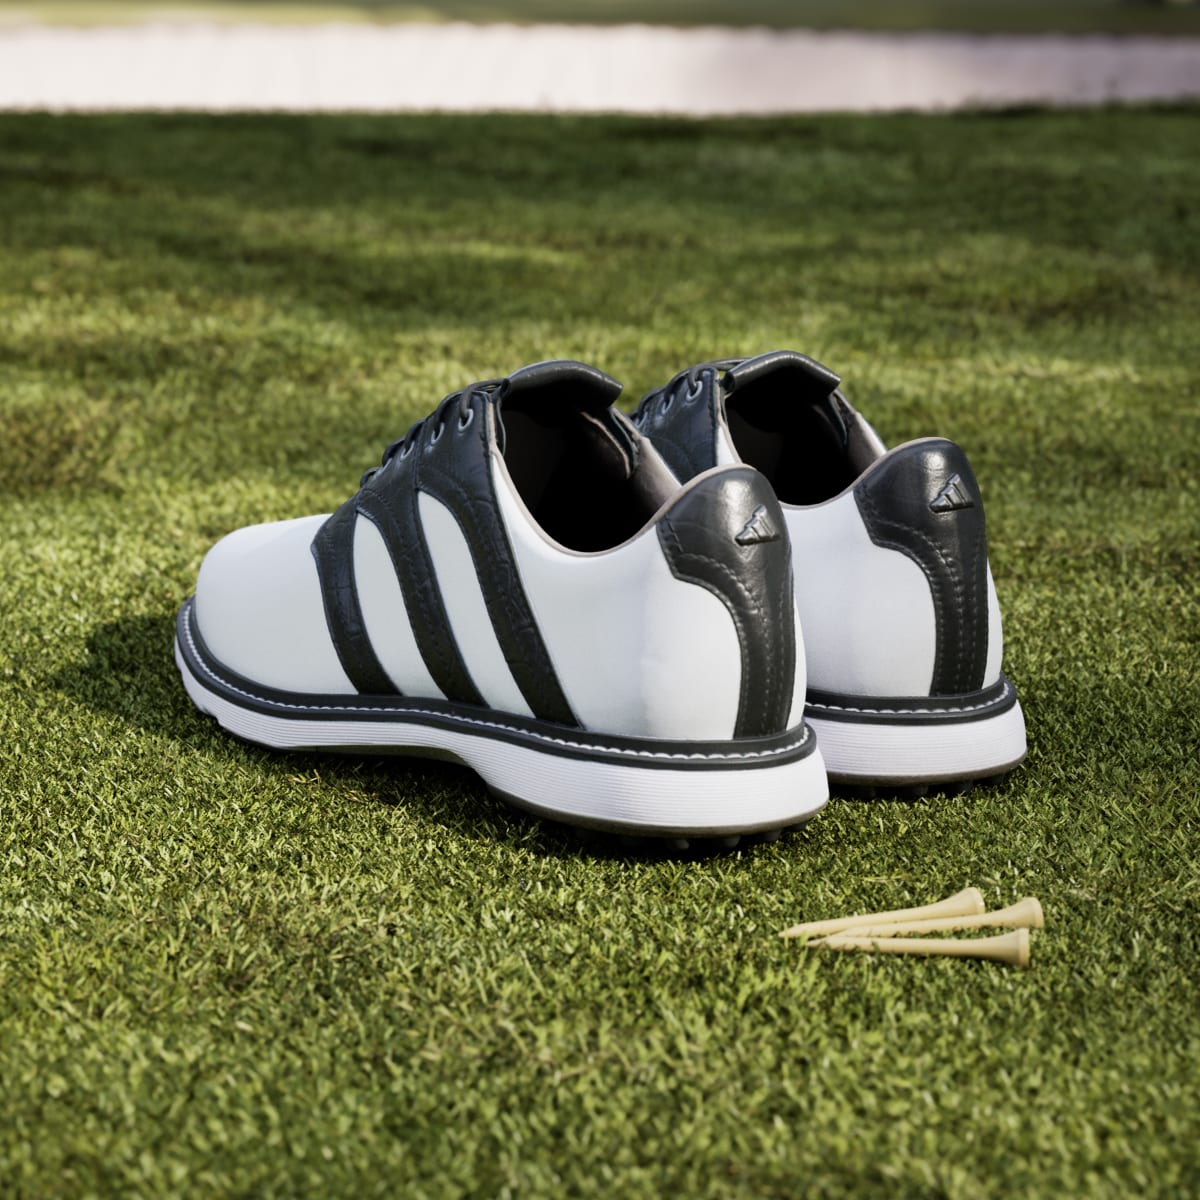 Adidas Zapatilla de golf MC Z-Traxion Spikeless. 5